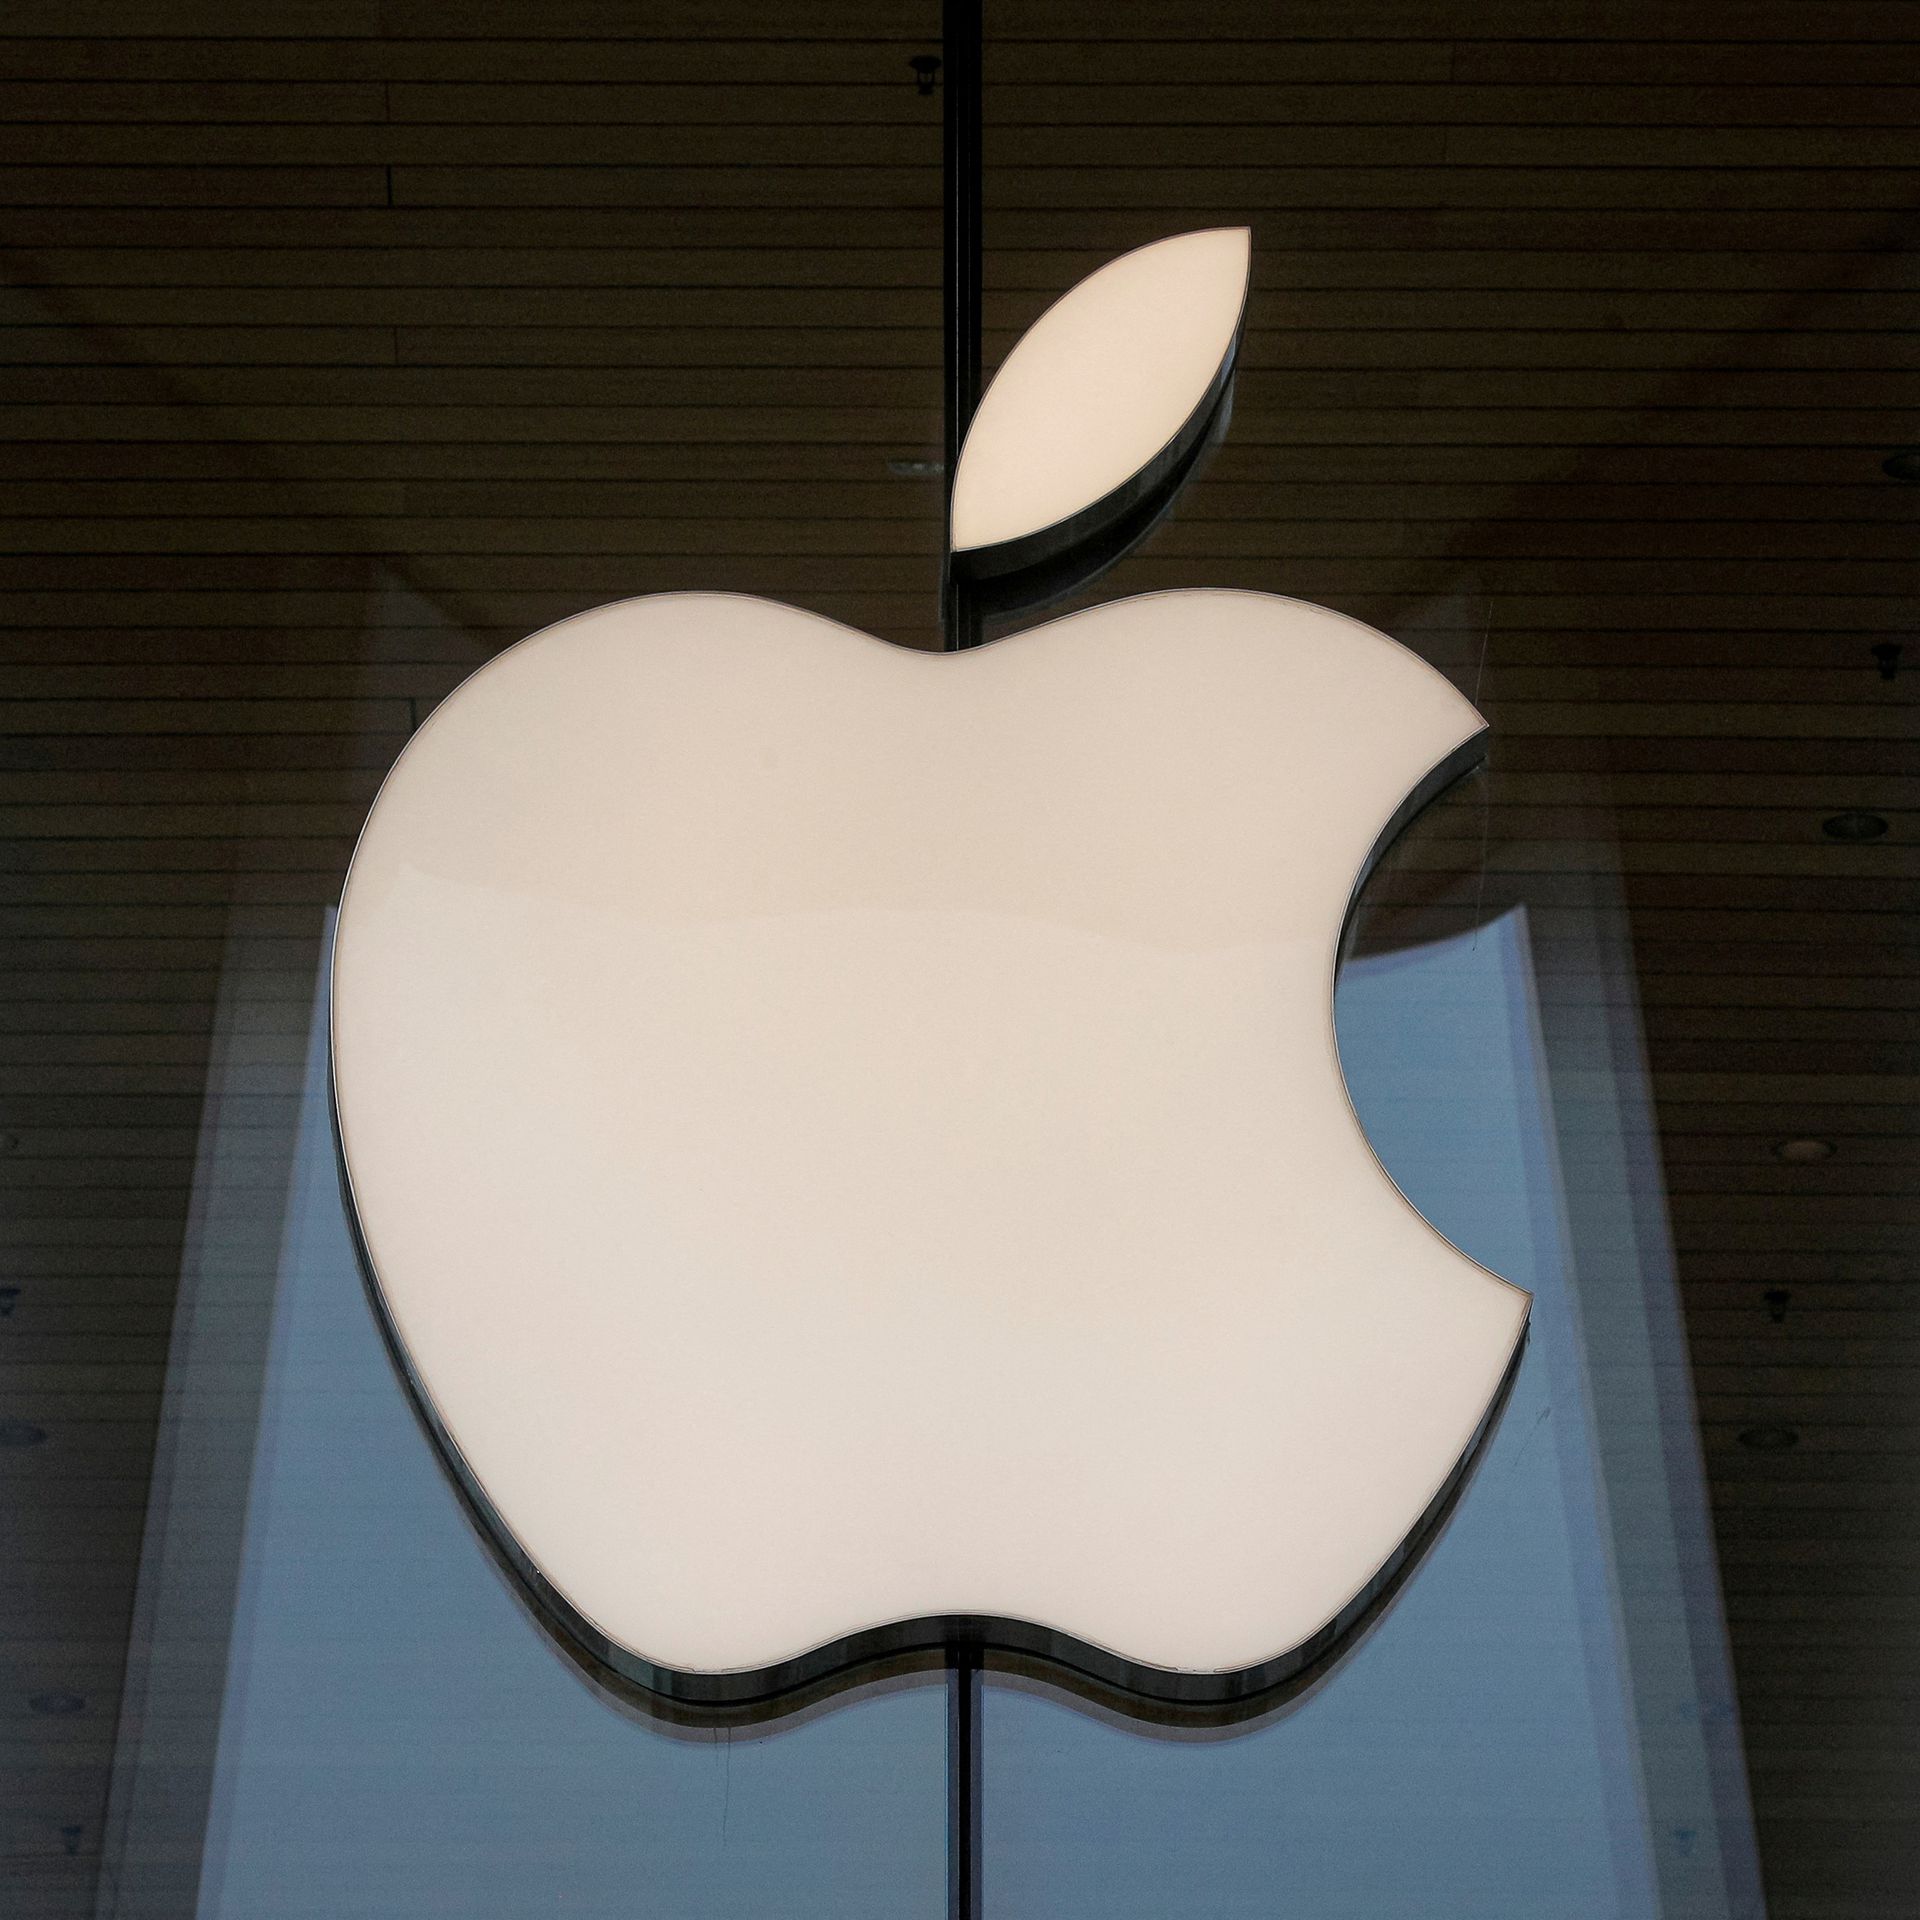 Apple çalışan haklarını ihlal ettiği iddiası ile karşı karşıya